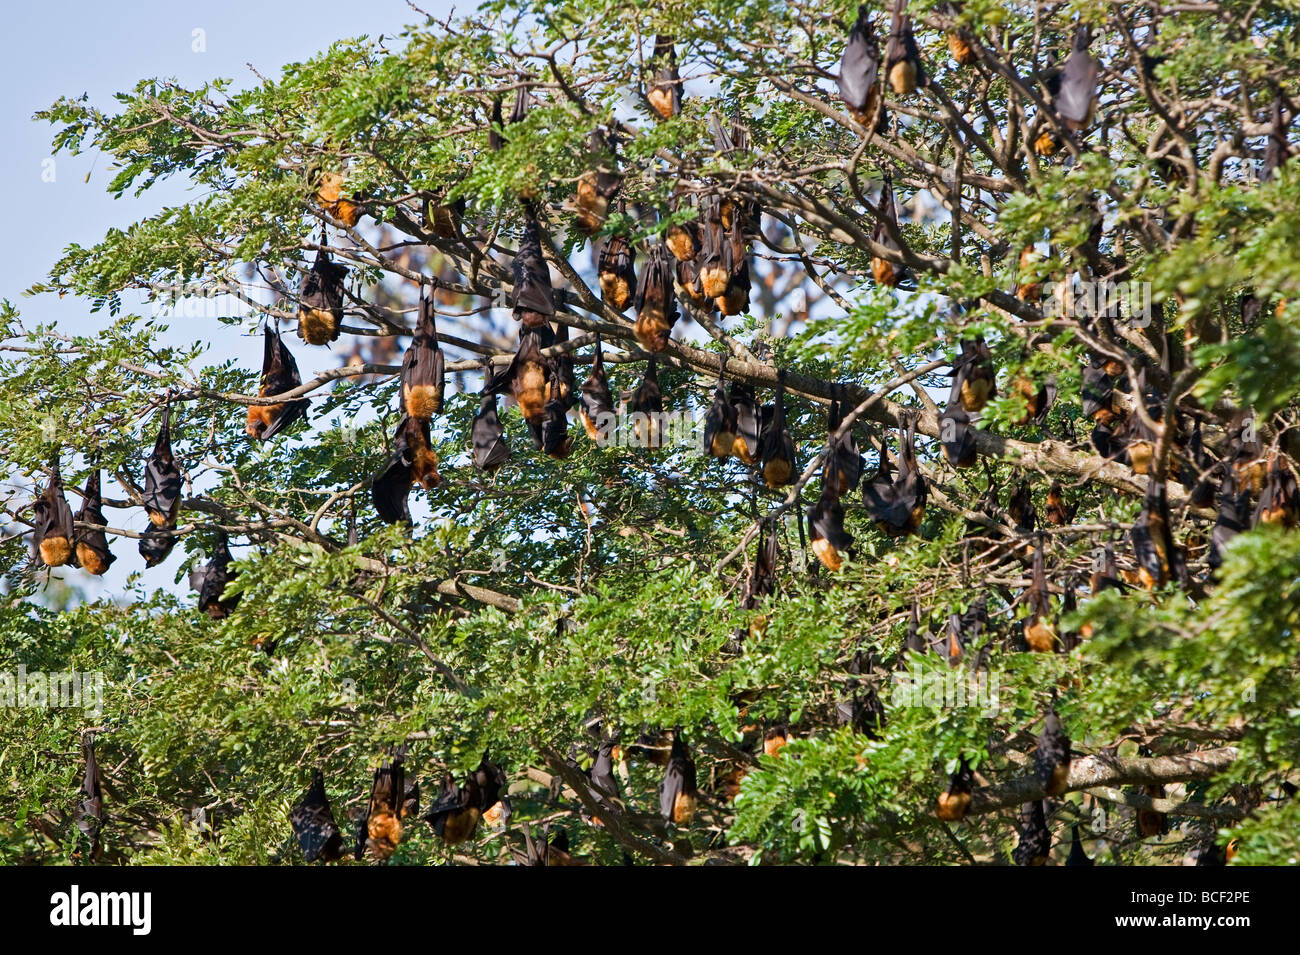 Myanmar Birmania, Stato di Rakhine. Le volpi volanti trascorrere la giornata appesi ai rami di alberi di grandi dimensioni nei pressi di Sittwe università. Foto Stock